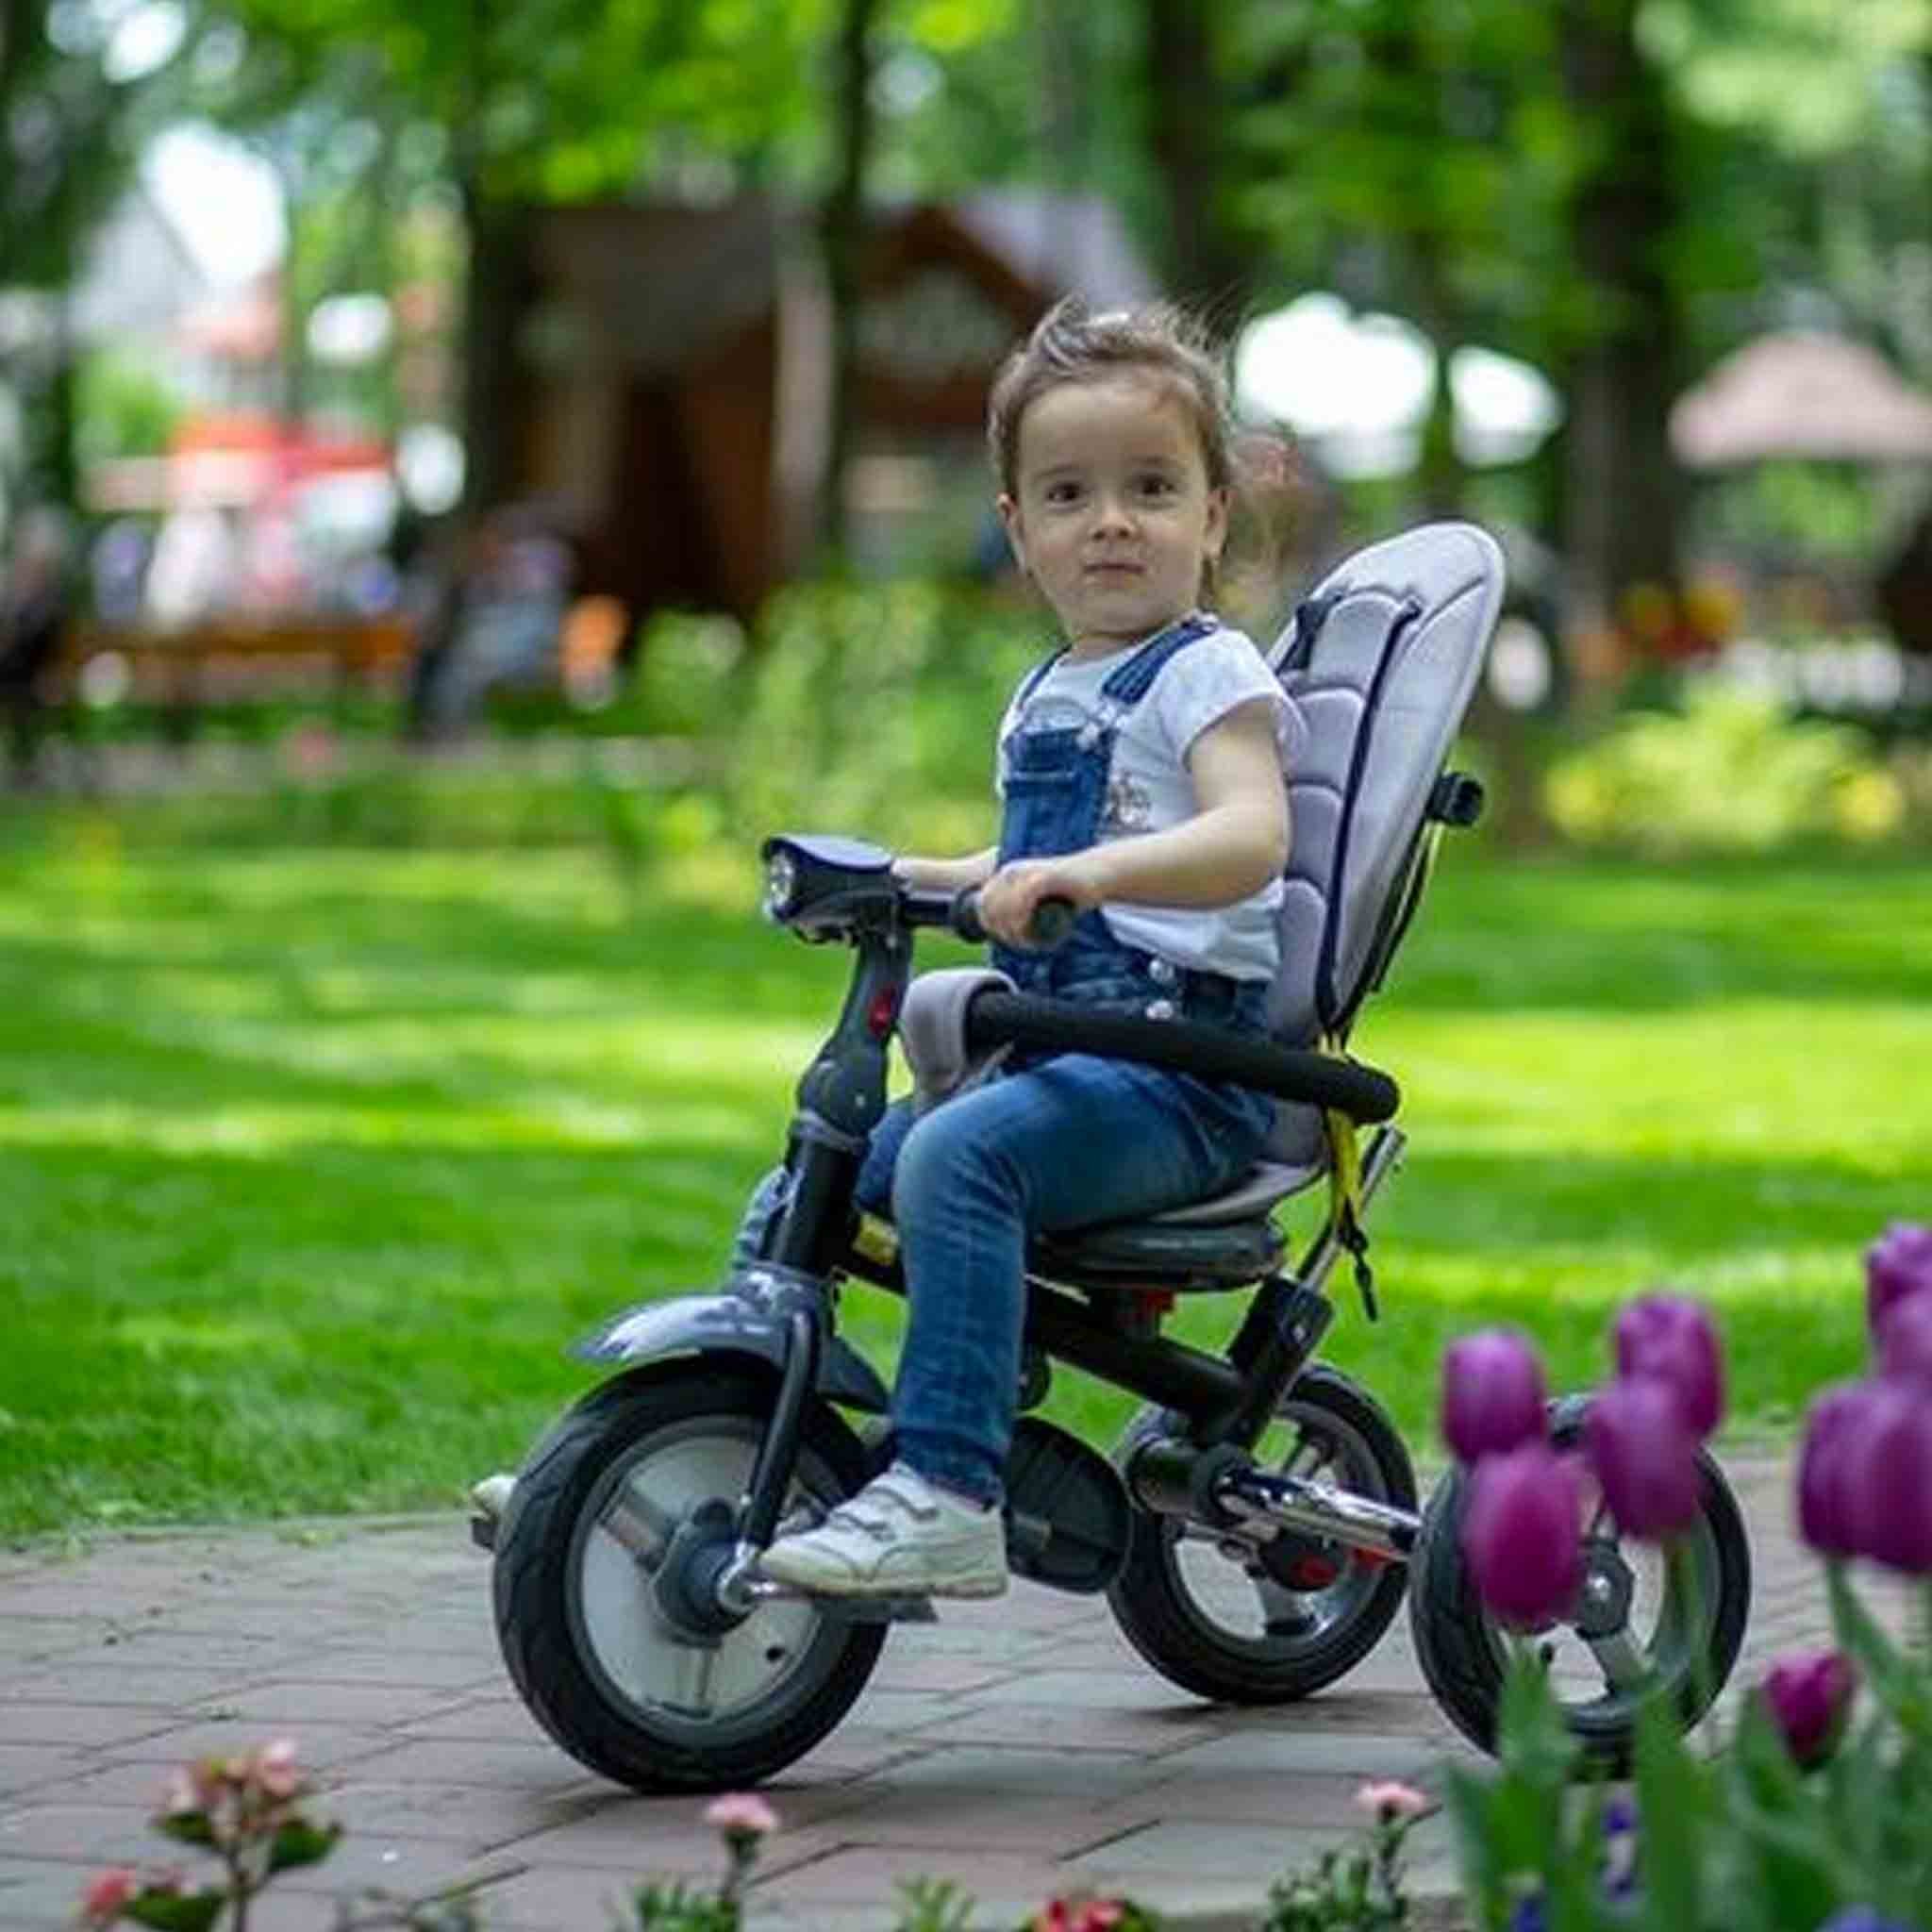 triciclo-velo-coccolle-vela-pieghevole-5-in-1-reclinabile-girevole-fronte-strada-mamma-bambino-ruote-giallo-lifestyle-2.jpg